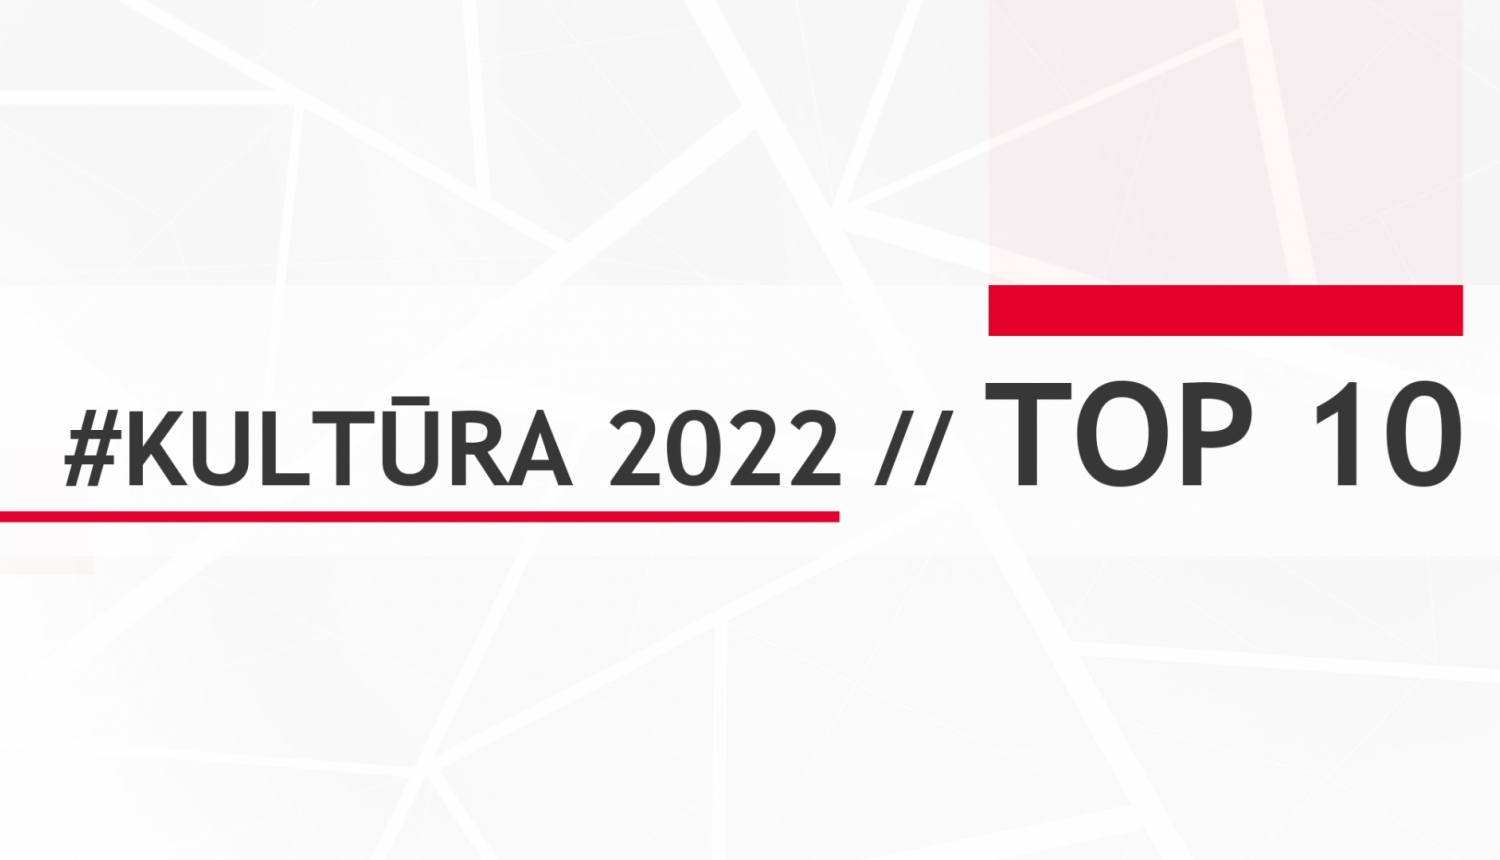 2022. gada TOP 10 Kultūras ministrijas pārraudzības jomās